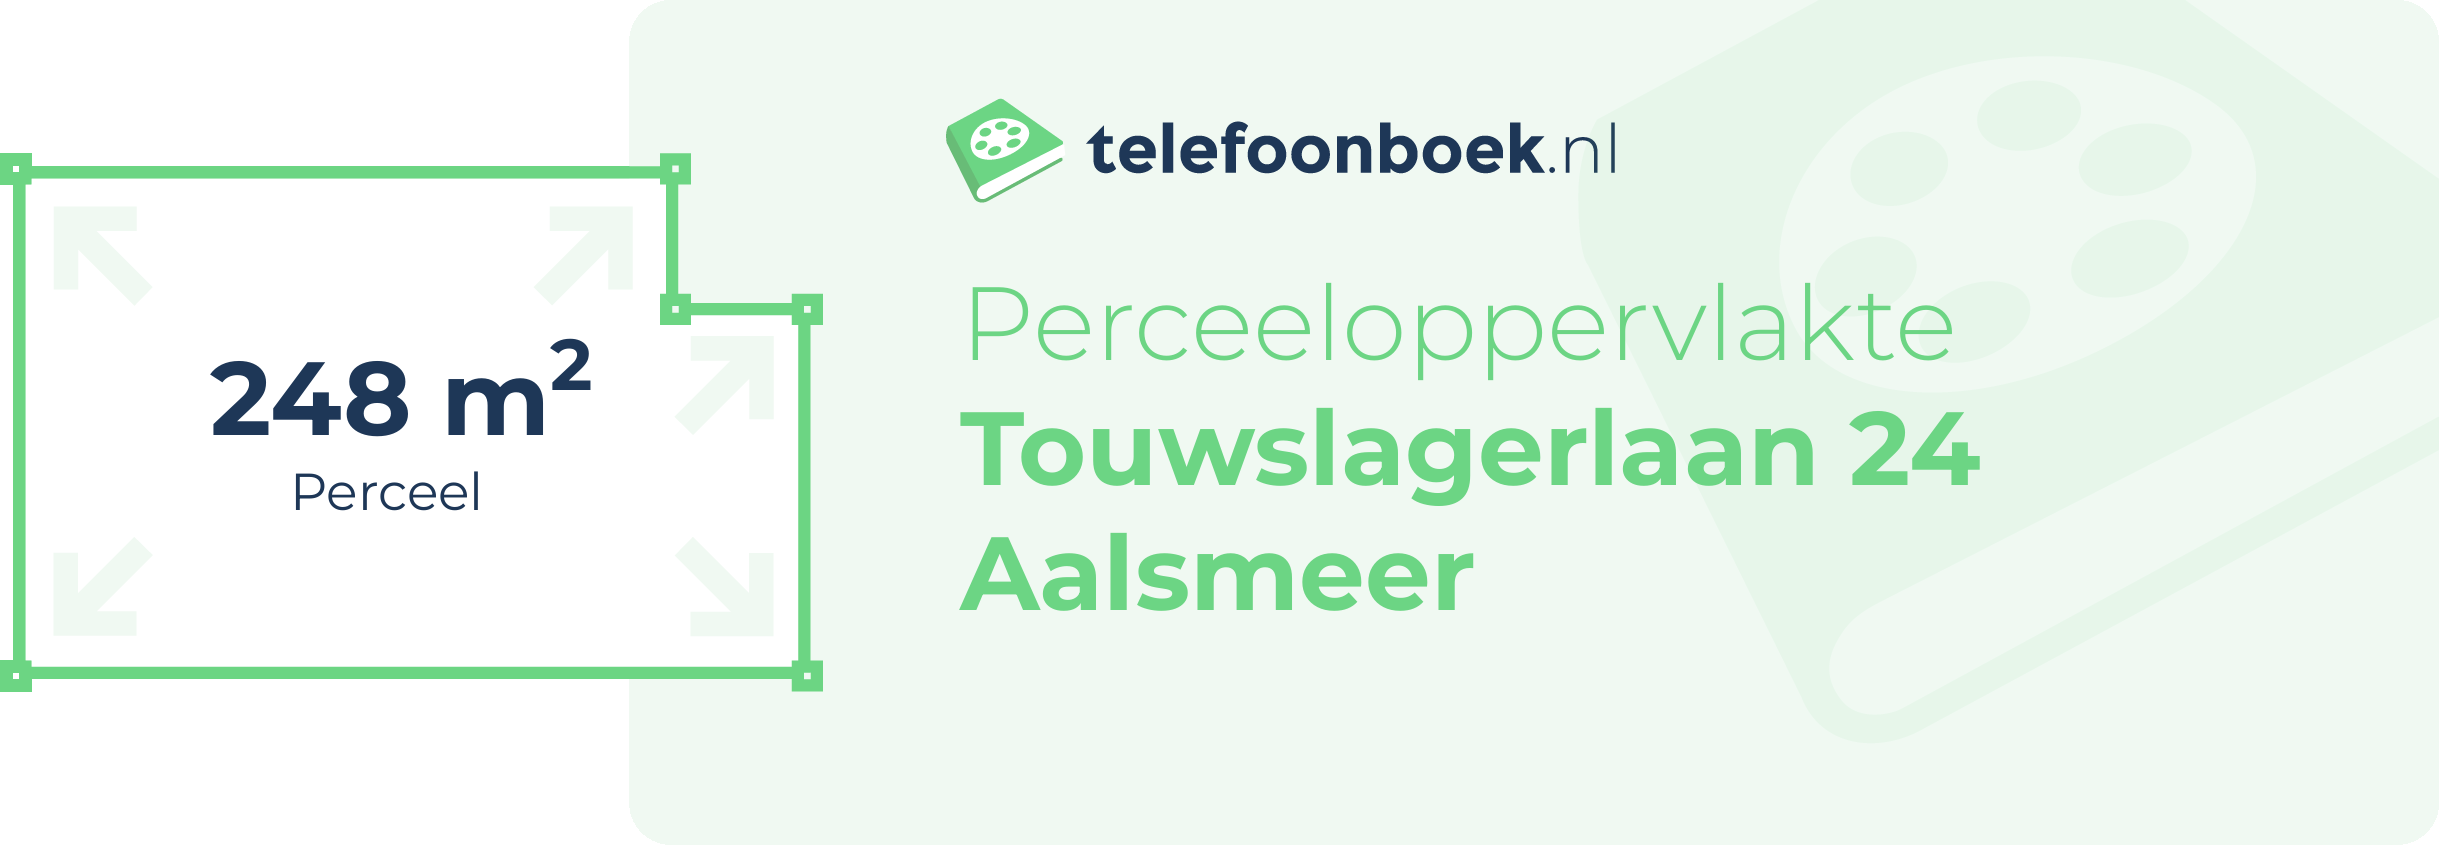 Perceeloppervlakte Touwslagerlaan 24 Aalsmeer